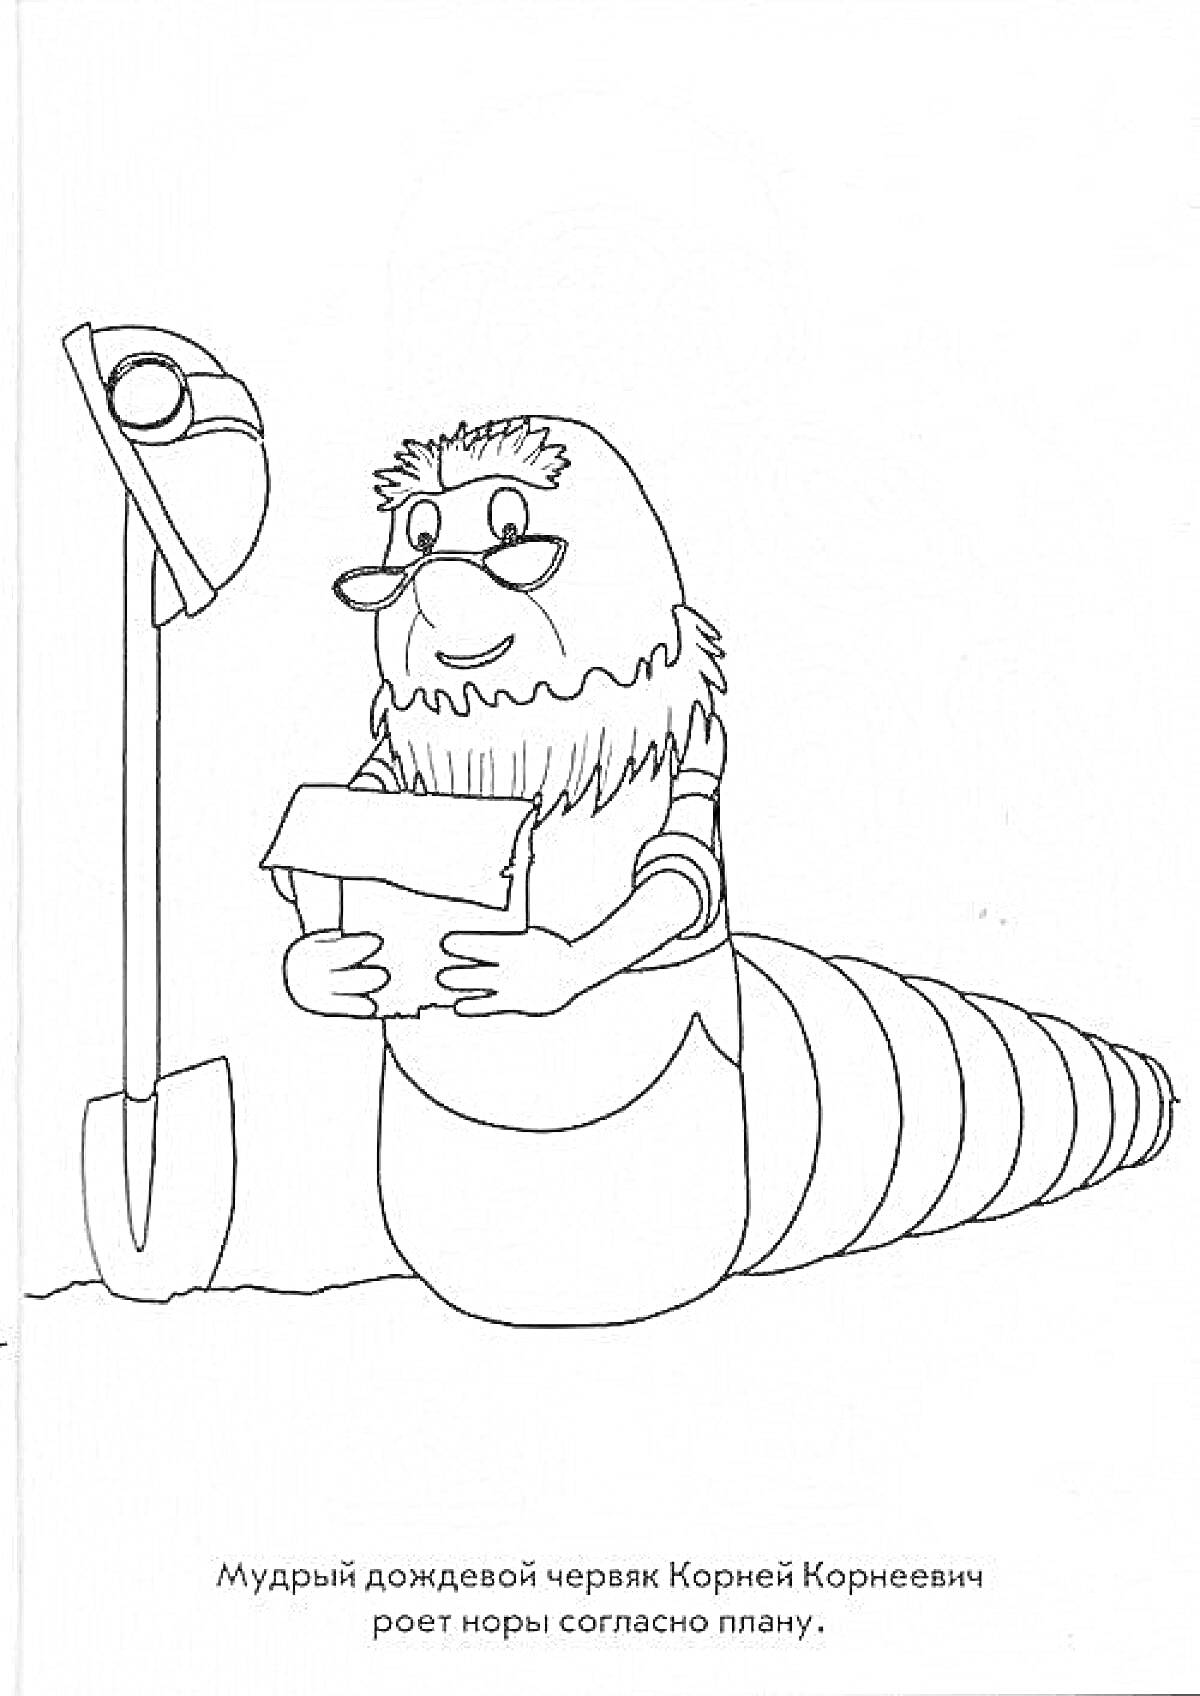 Мудрый дождевой червяк Корней Корнеевич роет норы согласно плану, на картинке изображены червяк с бородой и очками, держащий план, и лопата